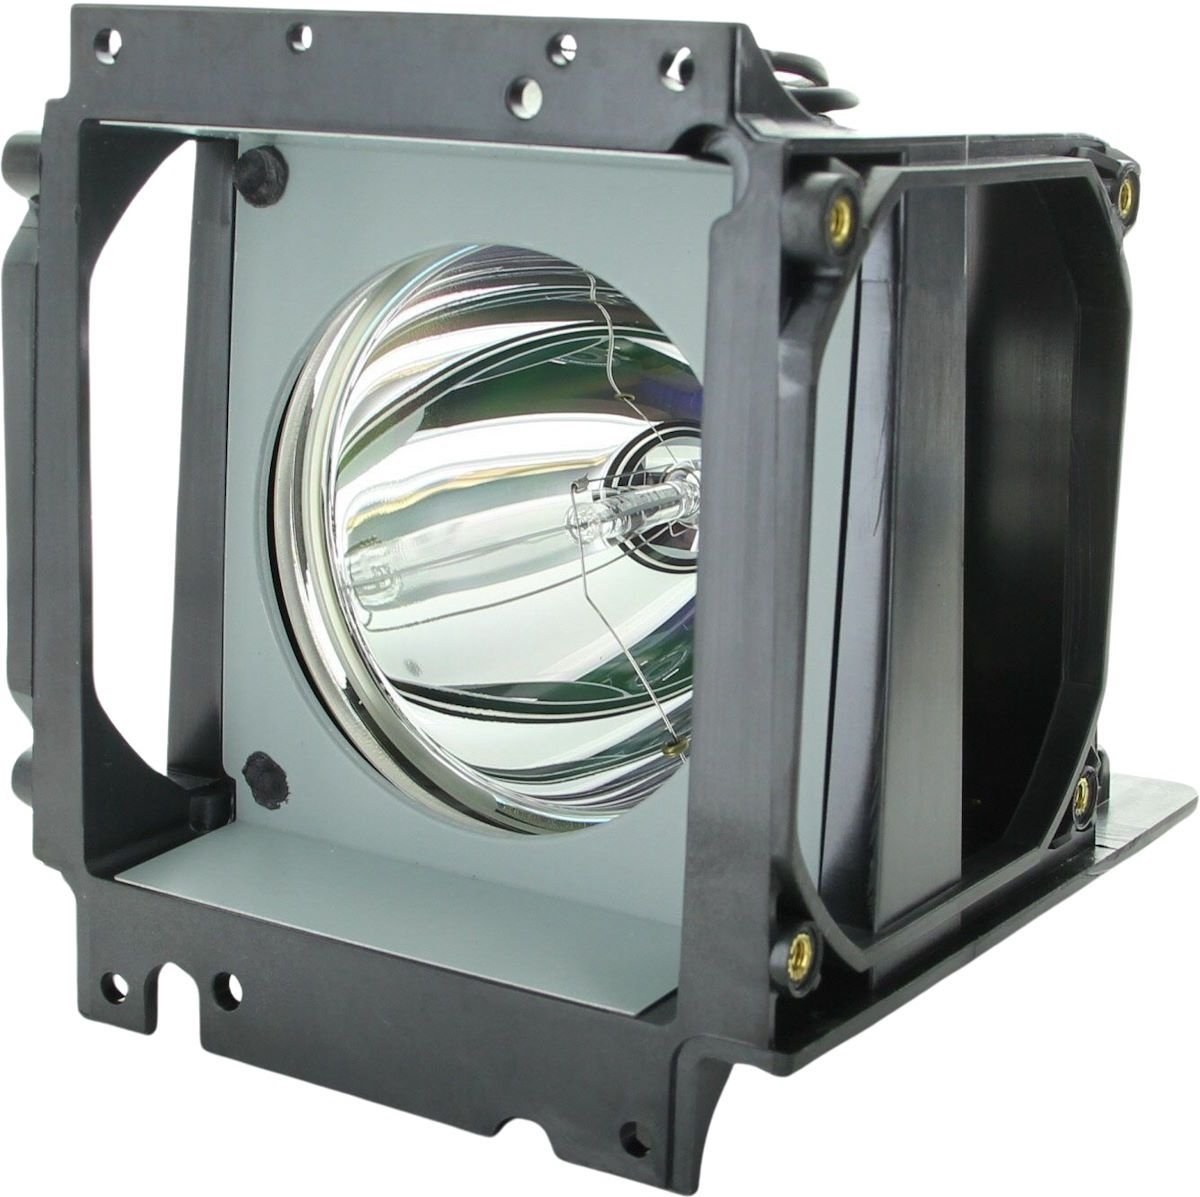 Beamerlamp geschikt voor de PLANAR Clarity c67RX beamer, lamp code 150-0142 / 151-0005 / 151-1063. Bevat originele P-VIP lamp, prestaties gelijk aan origineel.